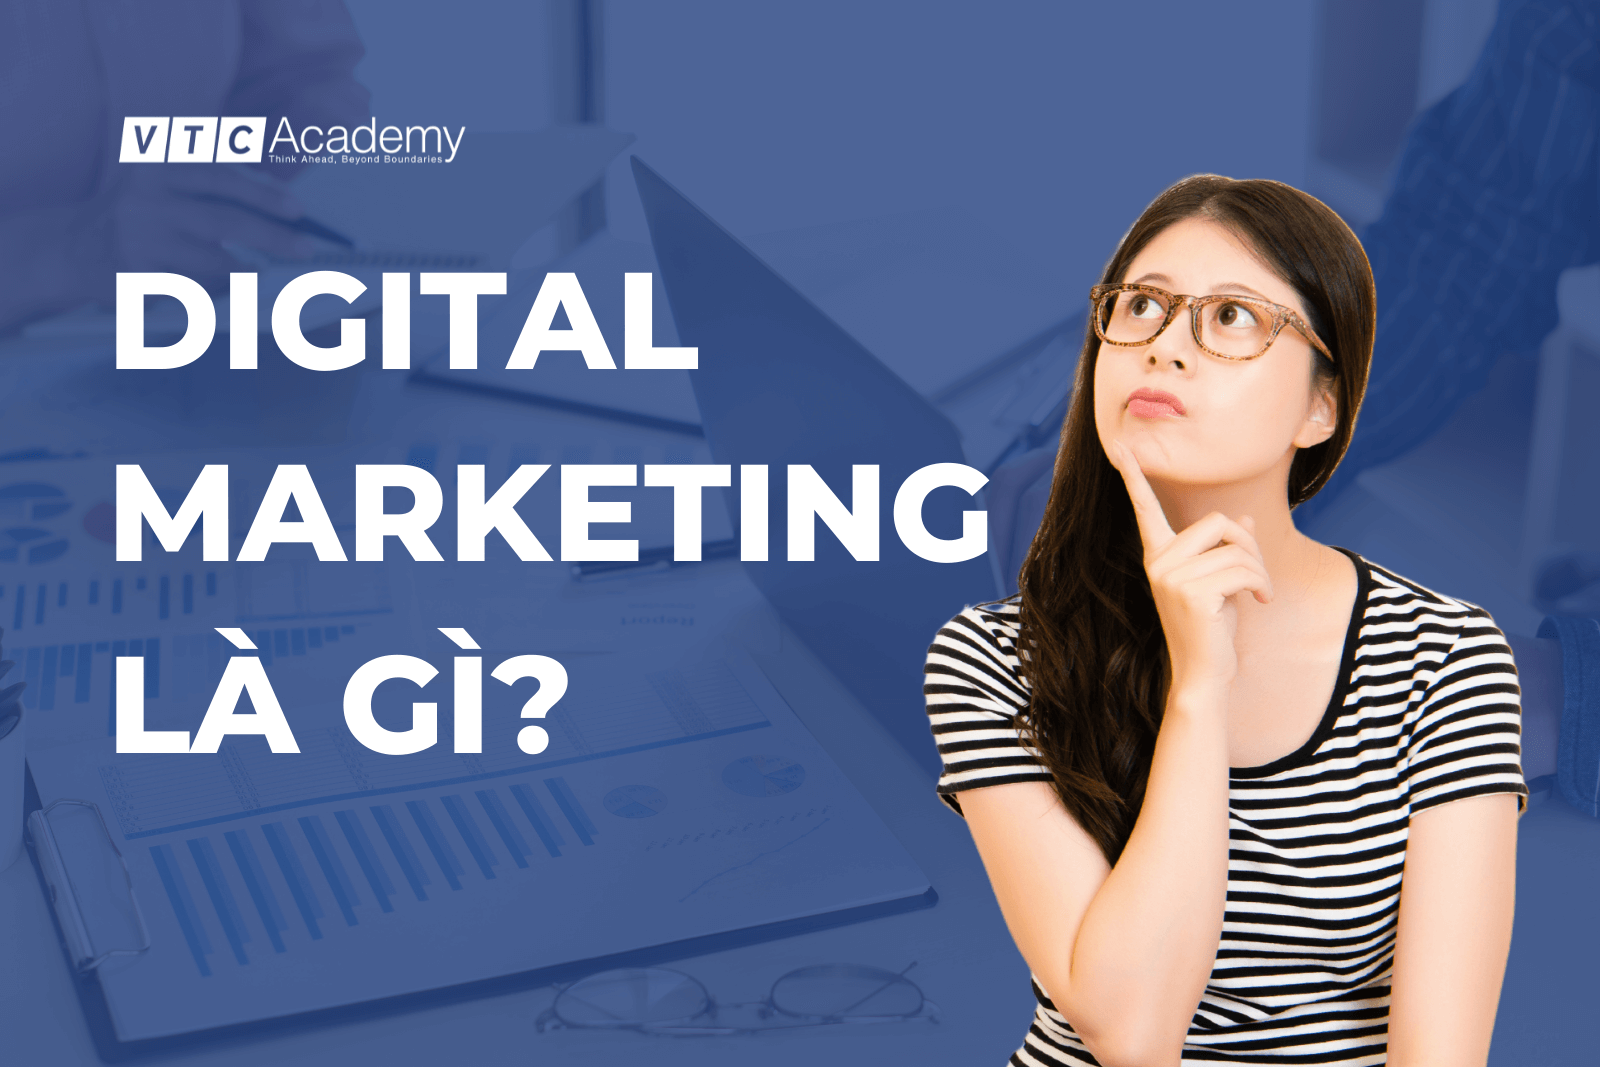 Digital Marketing là gì? Tổng quan về ngành và cơ hội nghề nghiệp